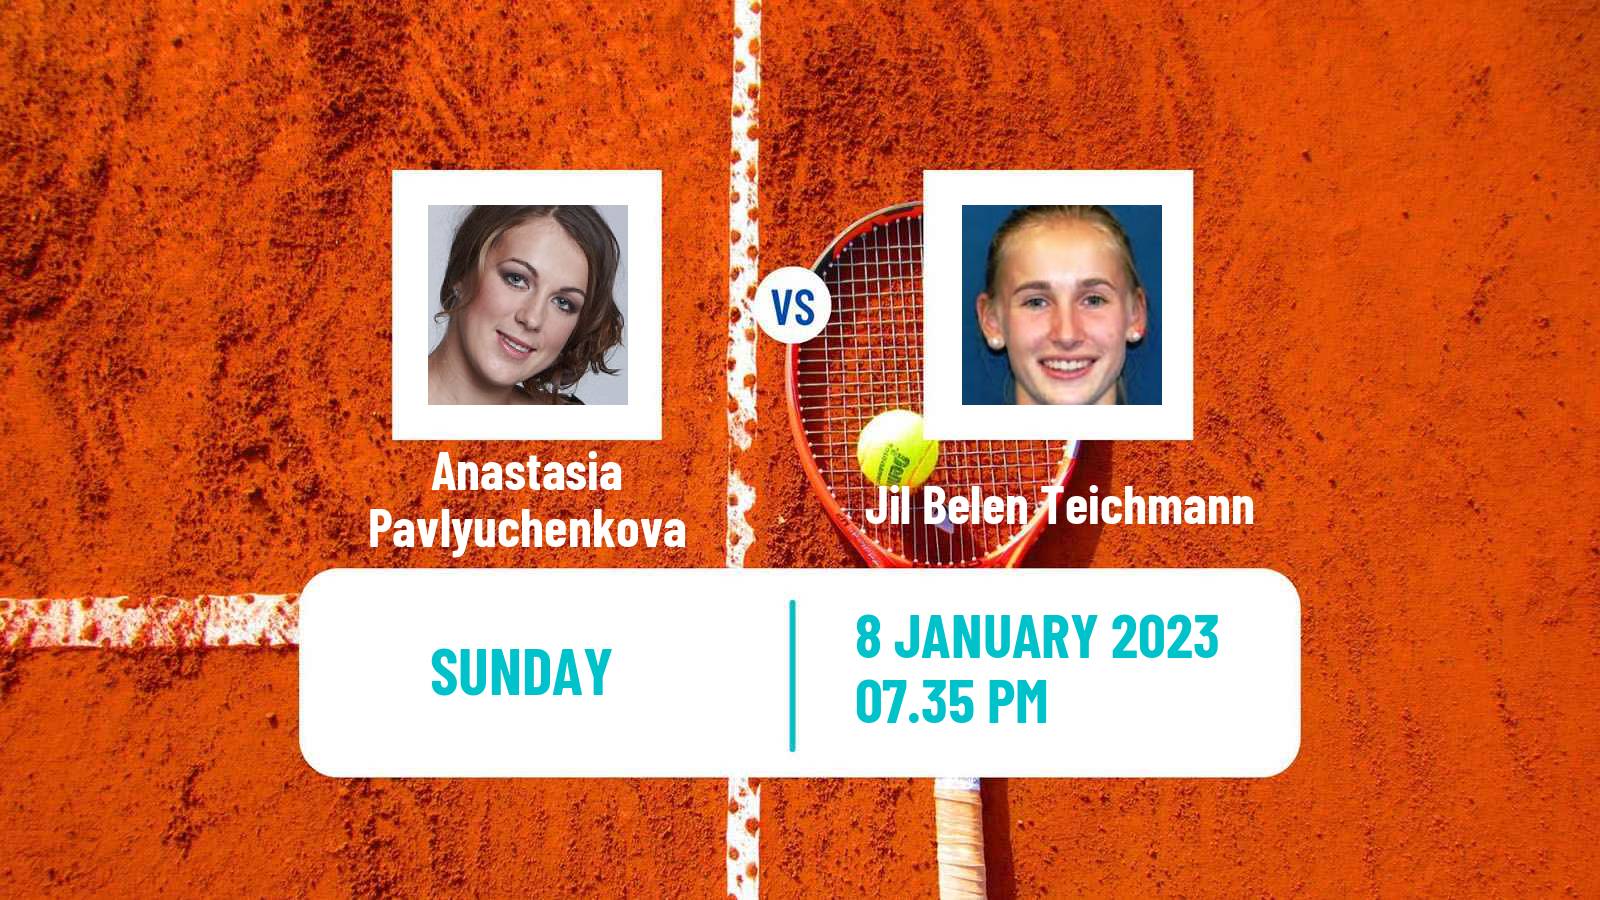 Tennis WTA Adelaide 2 Anastasia Pavlyuchenkova - Jil Belen Teichmann